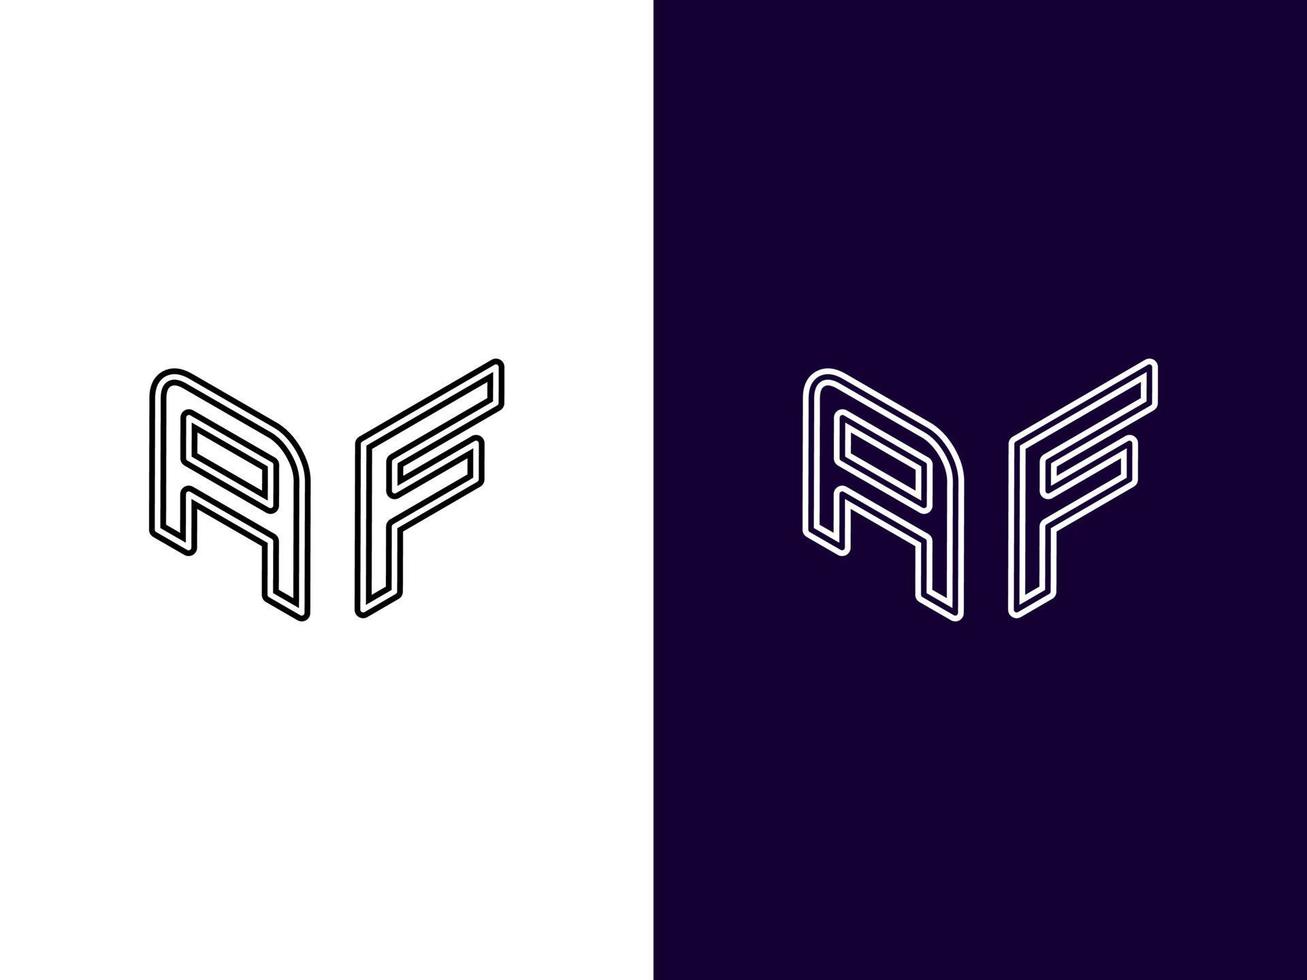 Initial letter AF minimalist modern 3D logo design vector